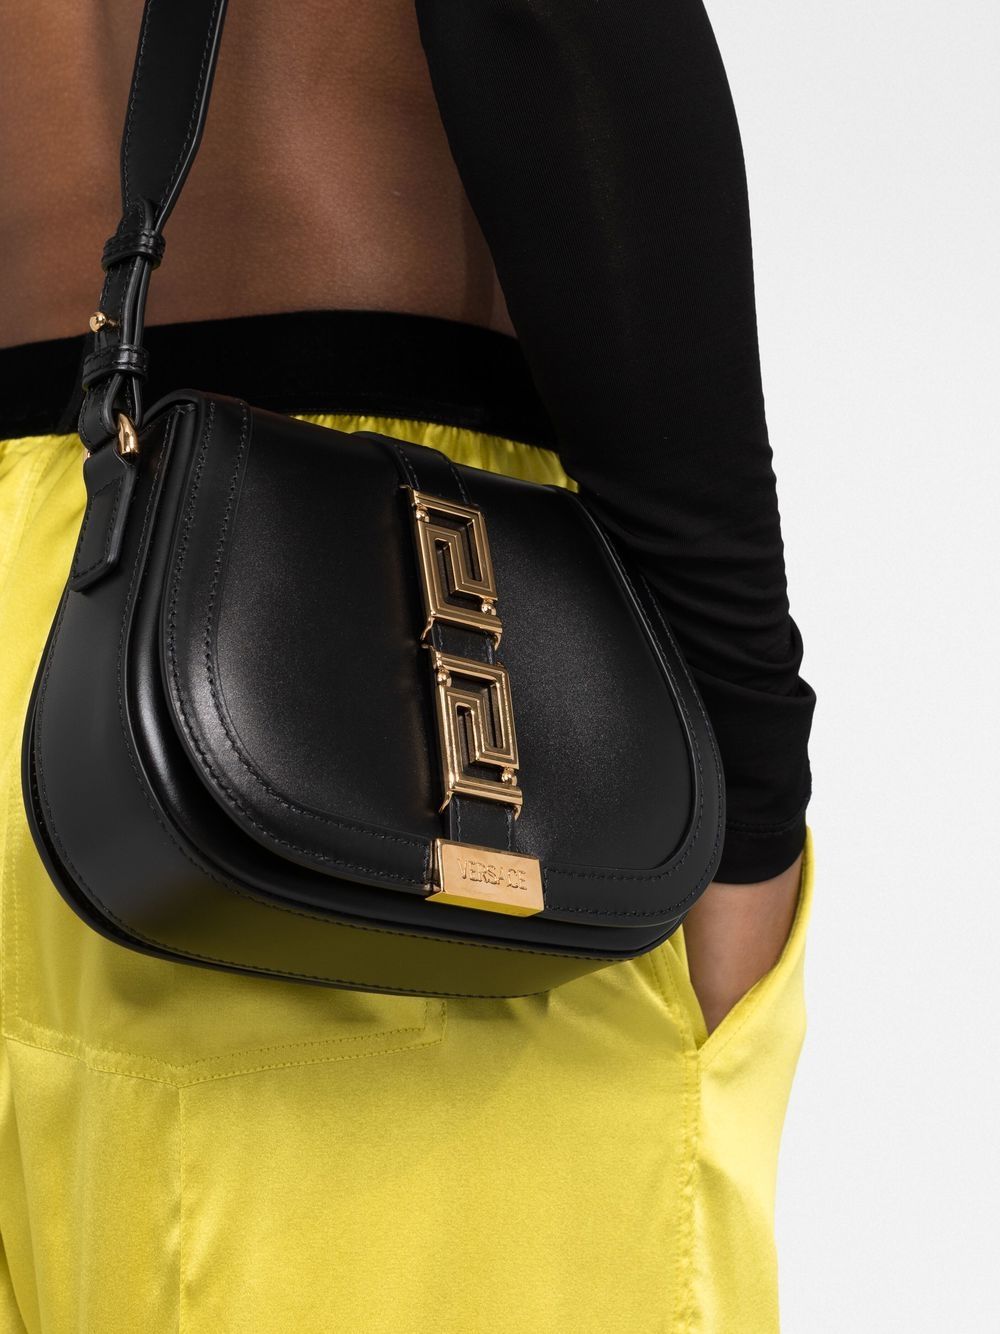 Versace Greca Goddess Small Shoulder Bag - Black 10071291B00V 8054712771668  - Handbags - Jomashop